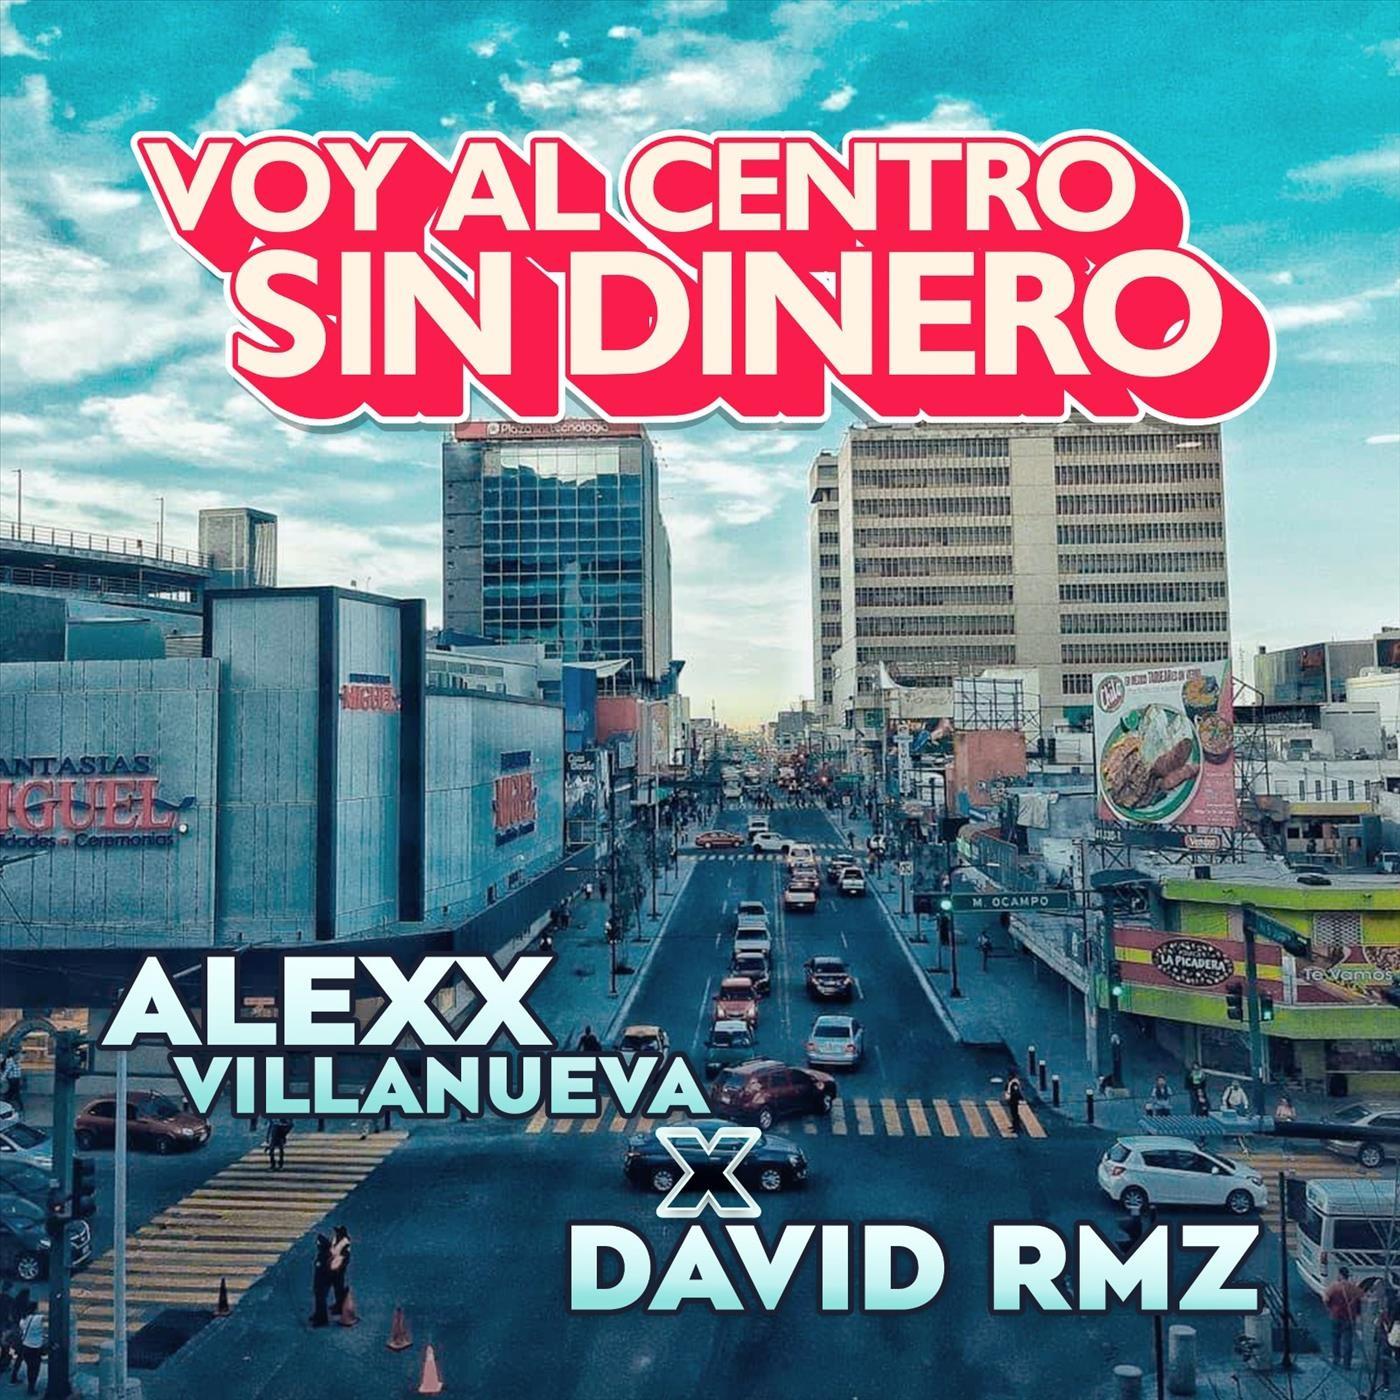 Alexx Villanueva - Voy al Centro sin dinero